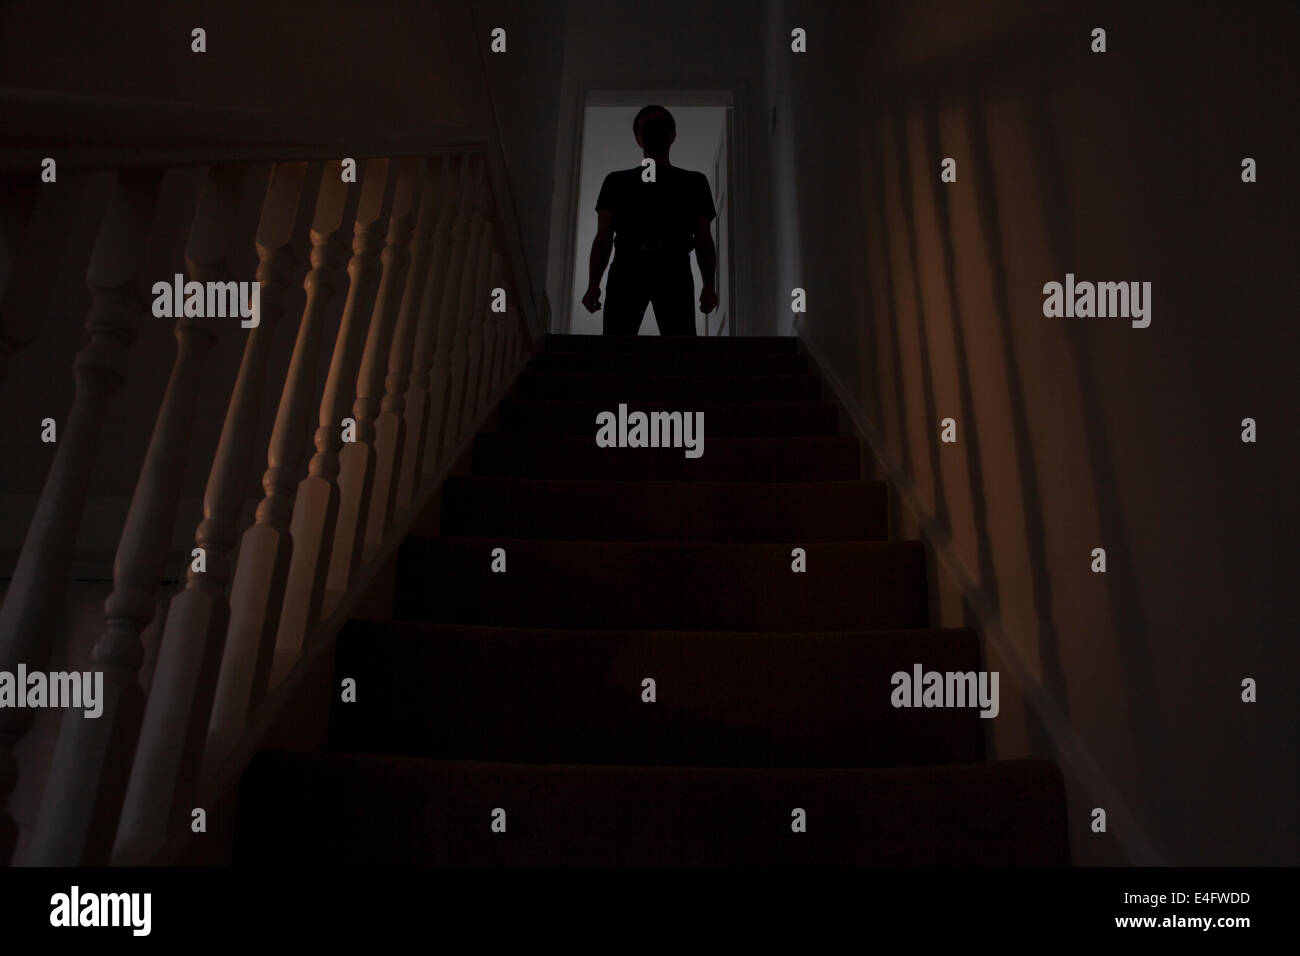 Silhouette d'un homme debout en haut d'un escalier, les ombres projetées sur les murs de la lumière ci-dessous. Voir des images similaires. Banque D'Images